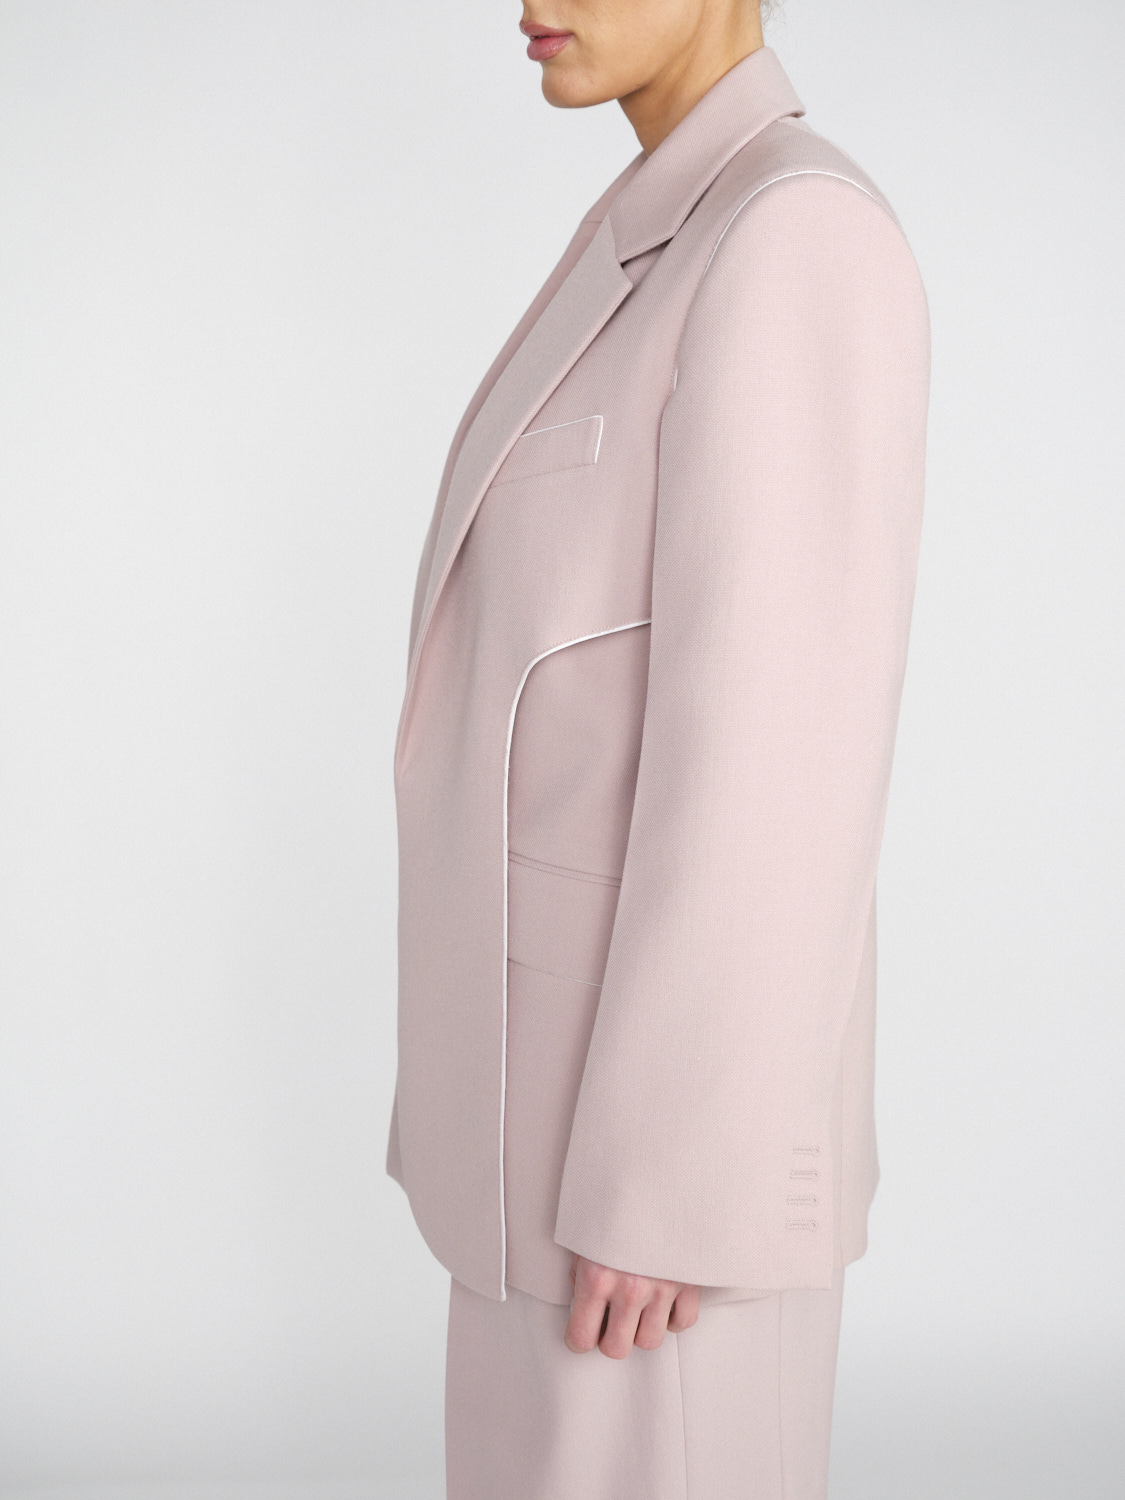 Victoria Beckham Blazer in misto lana vergine con dettagli a strati   rosa 34